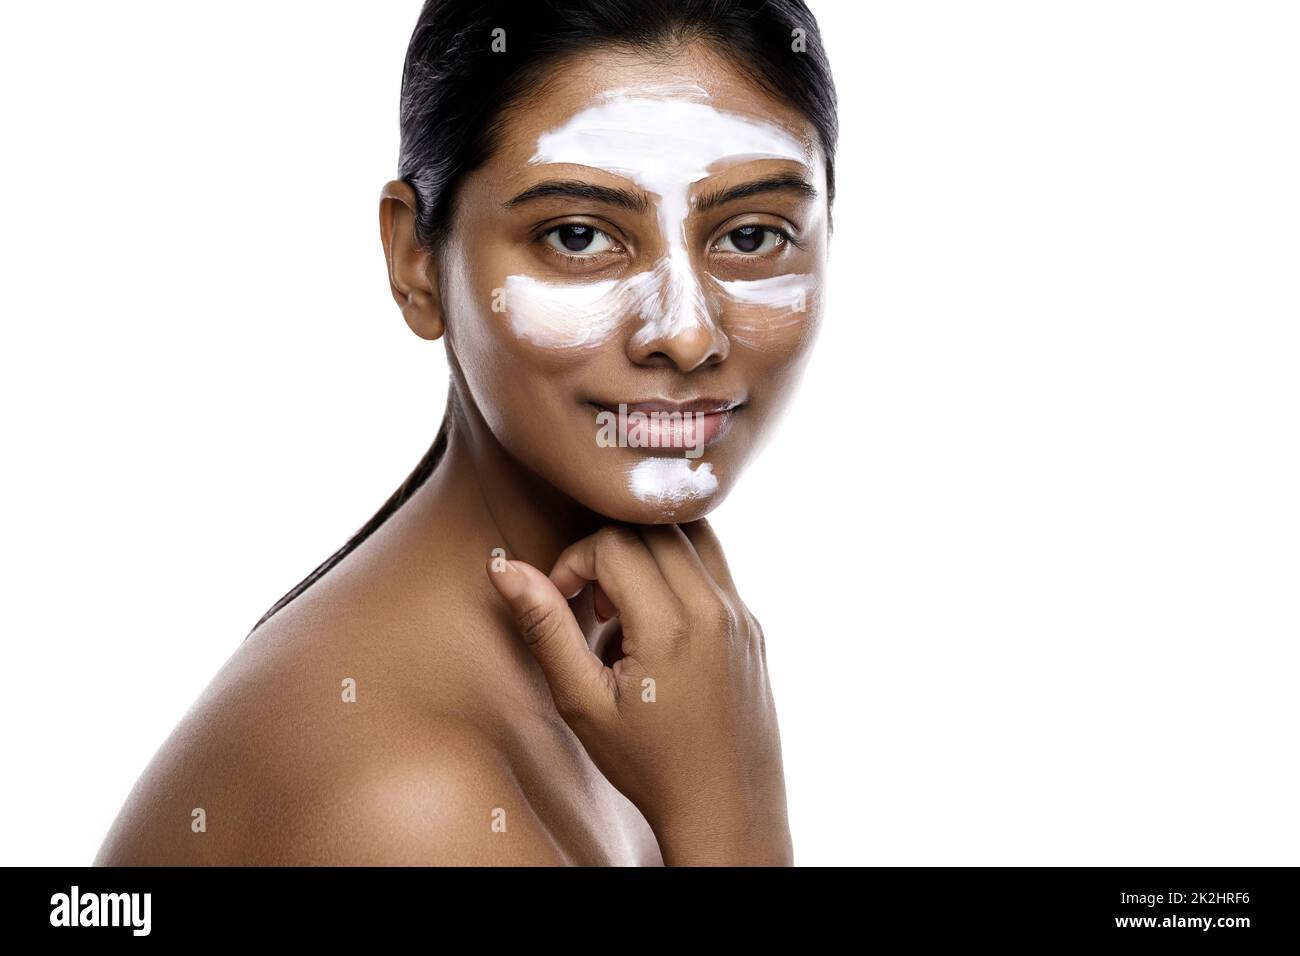 Jeune femme indienne avec un masque de nettoyage appliqué sur son visage Banque D'Images